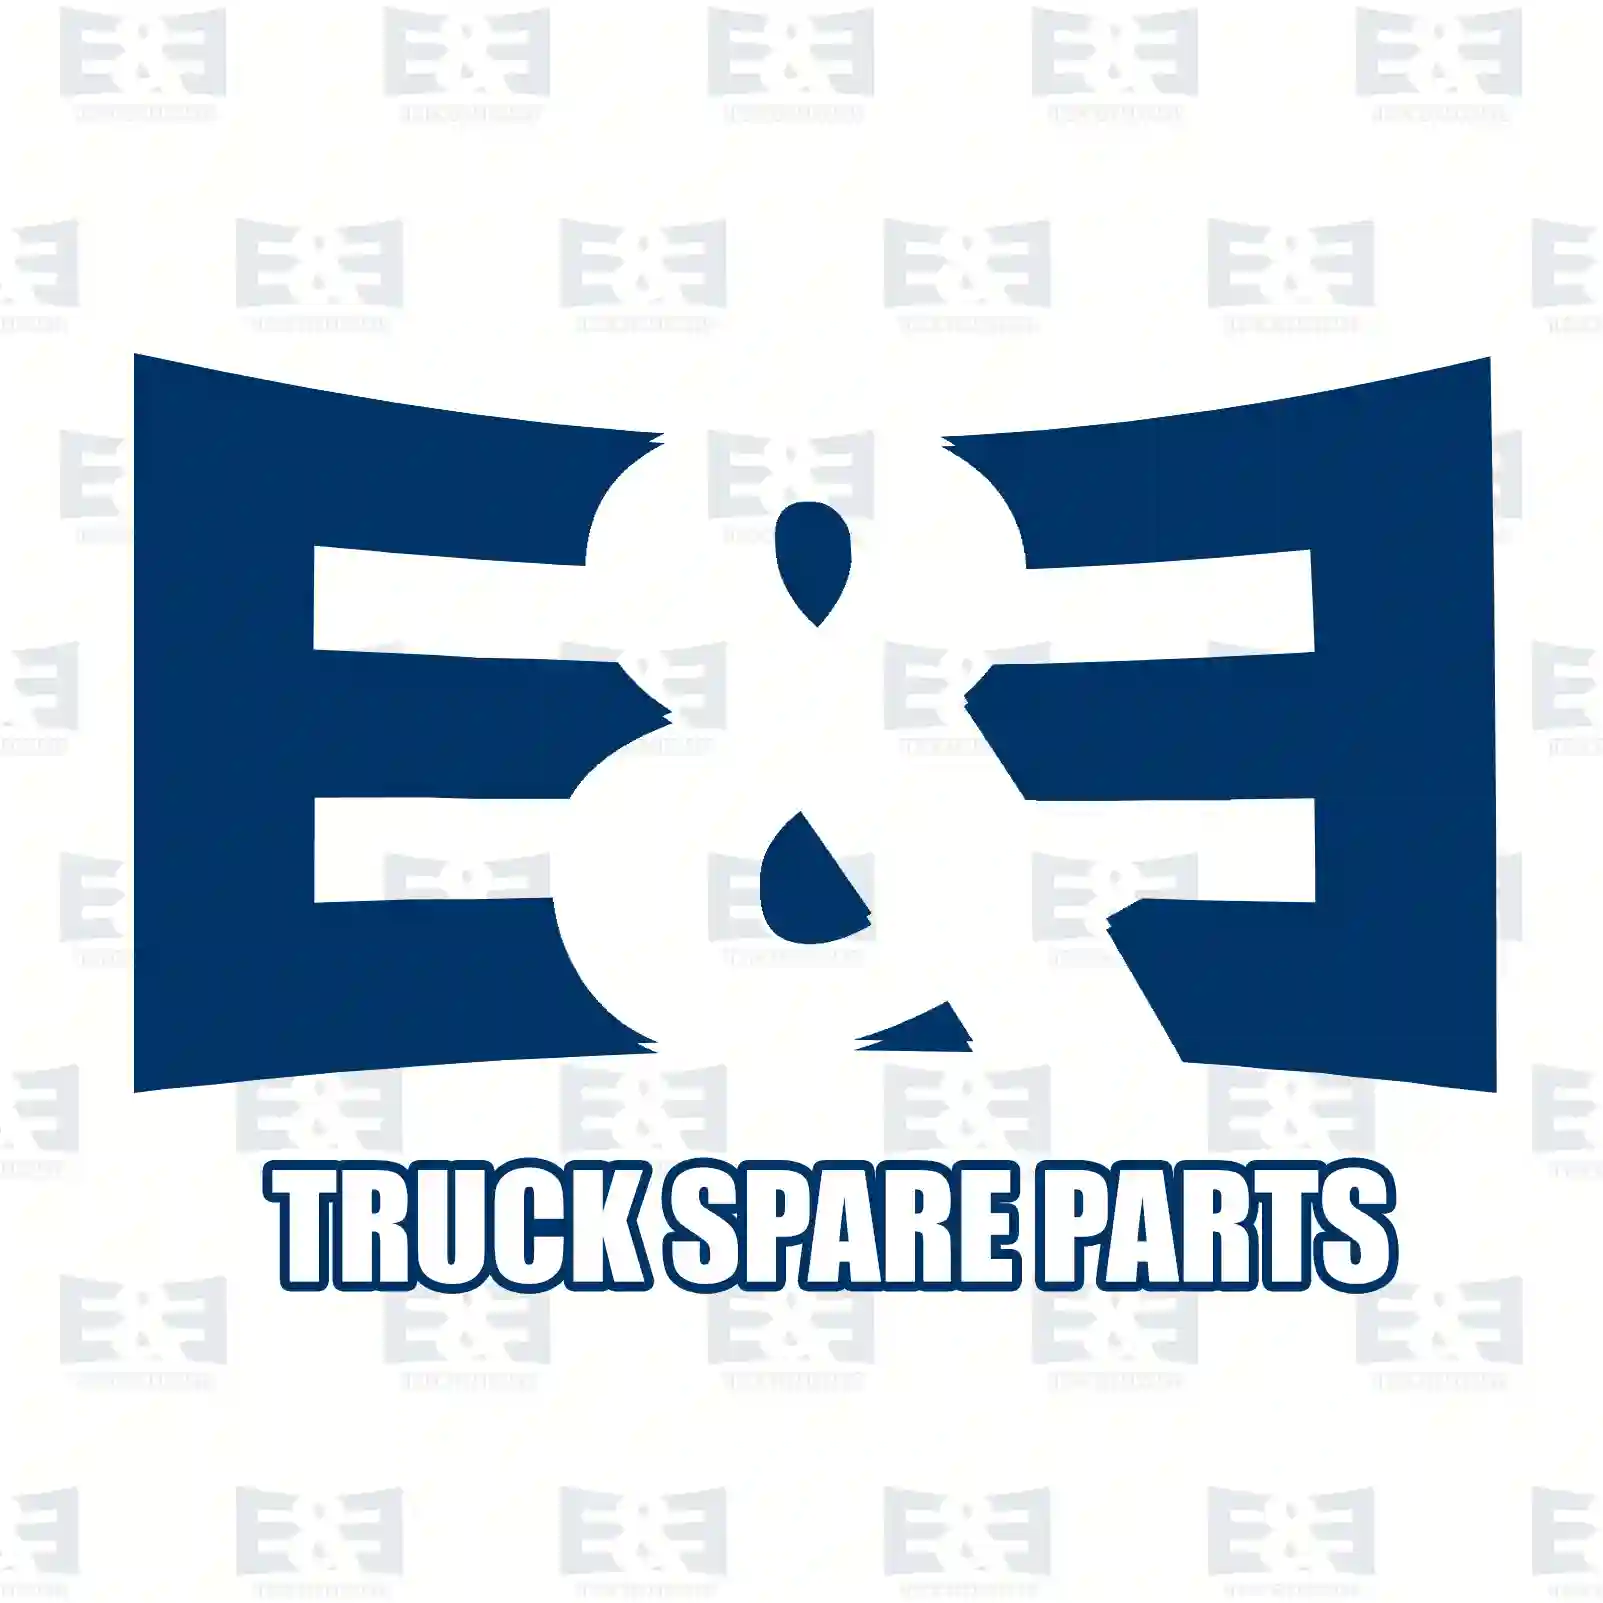 Ball joint, 2E2278338, 3752600237, 3752600537, , ||  2E2278338 E&E Truck Spare Parts | Truck Spare Parts, Auotomotive Spare Parts Ball joint, 2E2278338, 3752600237, 3752600537, , ||  2E2278338 E&E Truck Spare Parts | Truck Spare Parts, Auotomotive Spare Parts